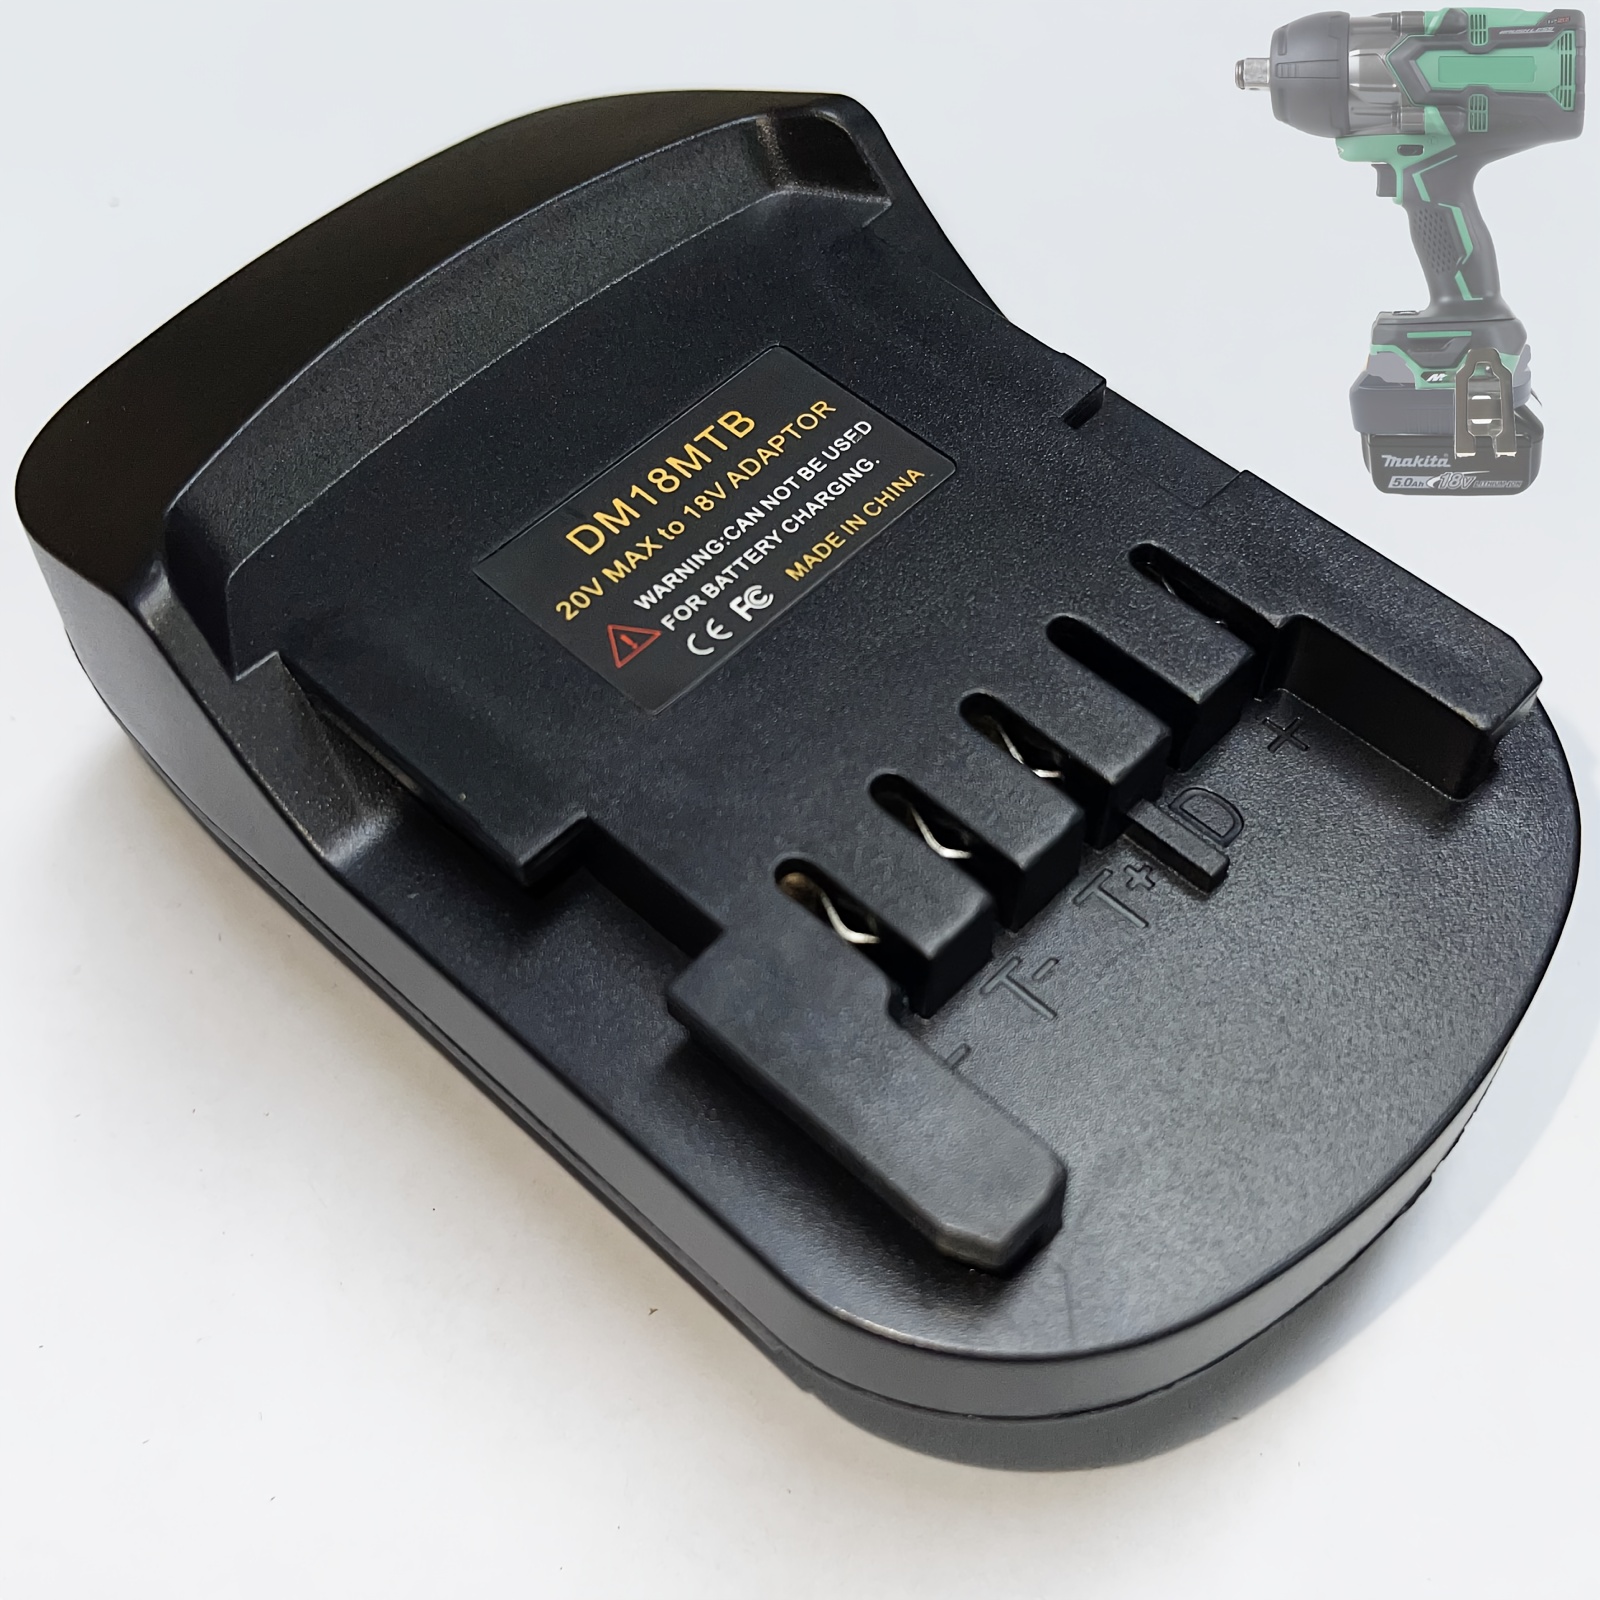 An $11 Black & Decker Firestorm Battery Adapter to use 20v Matrix Batteries.  